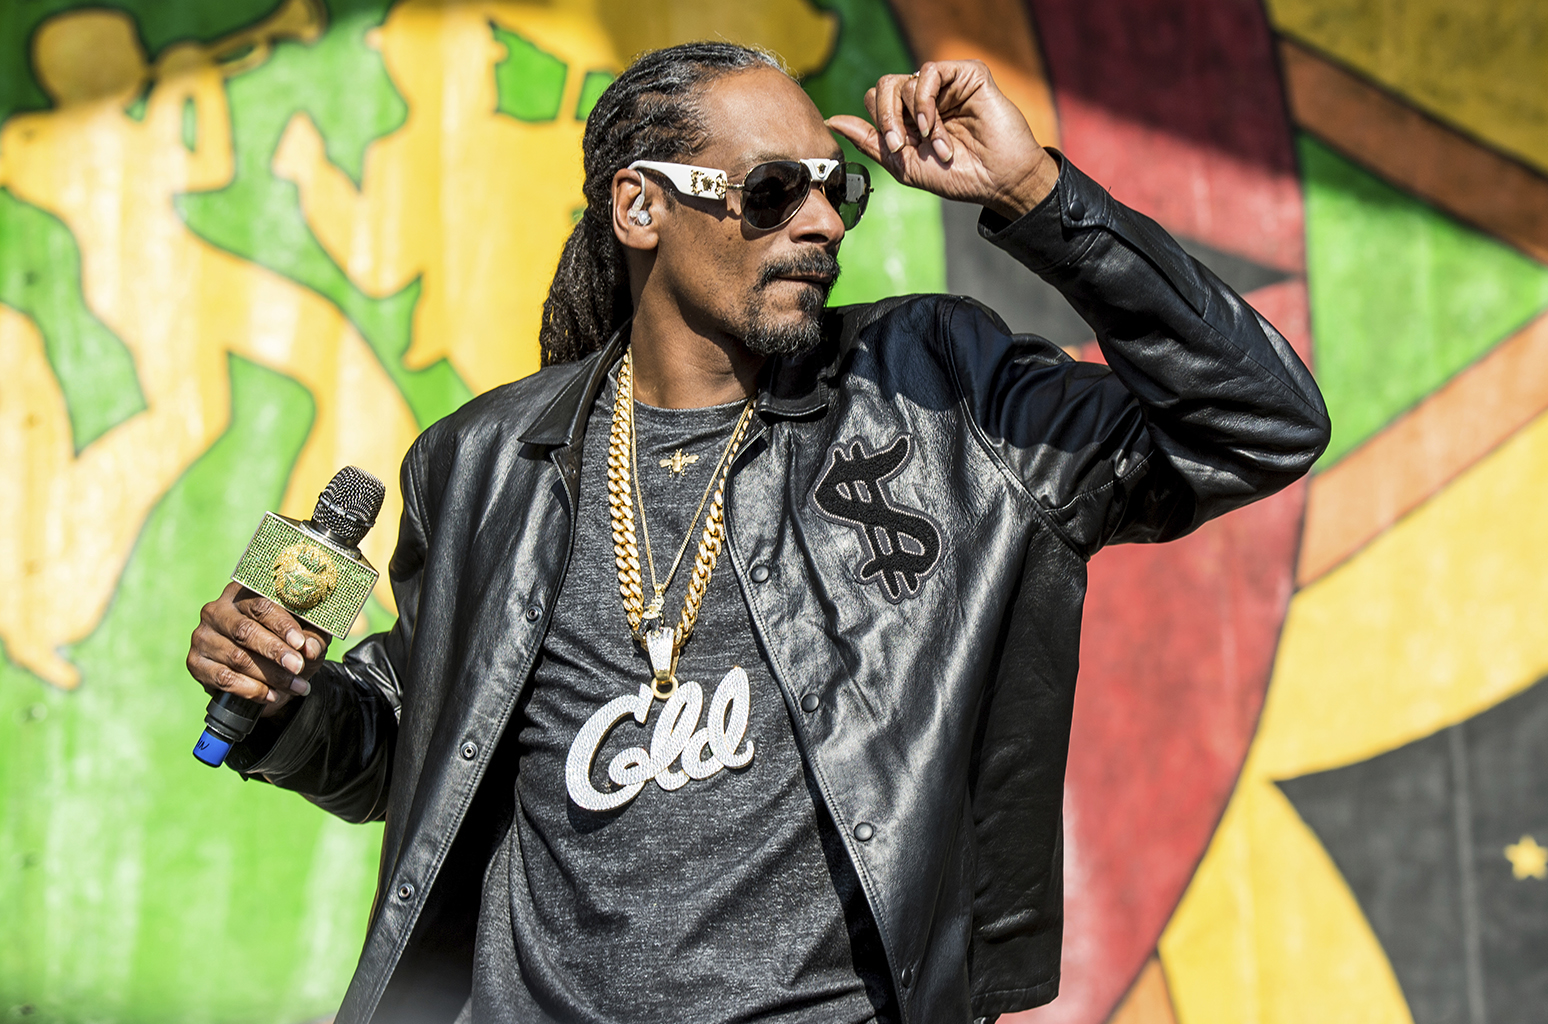 Snoop Dogg Wallpaper - Pastor Nganga Snoop Dogg - HD Wallpaper 